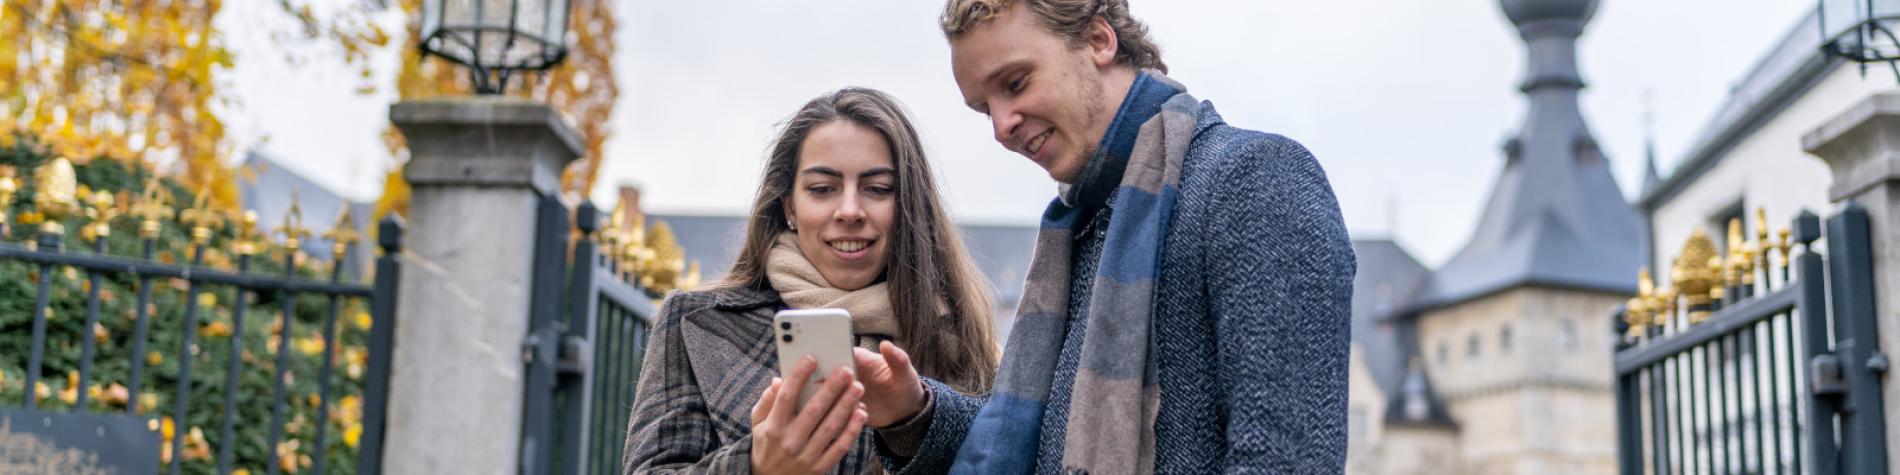 Un couple consulte en automne la web app du Pass sur son smartphone